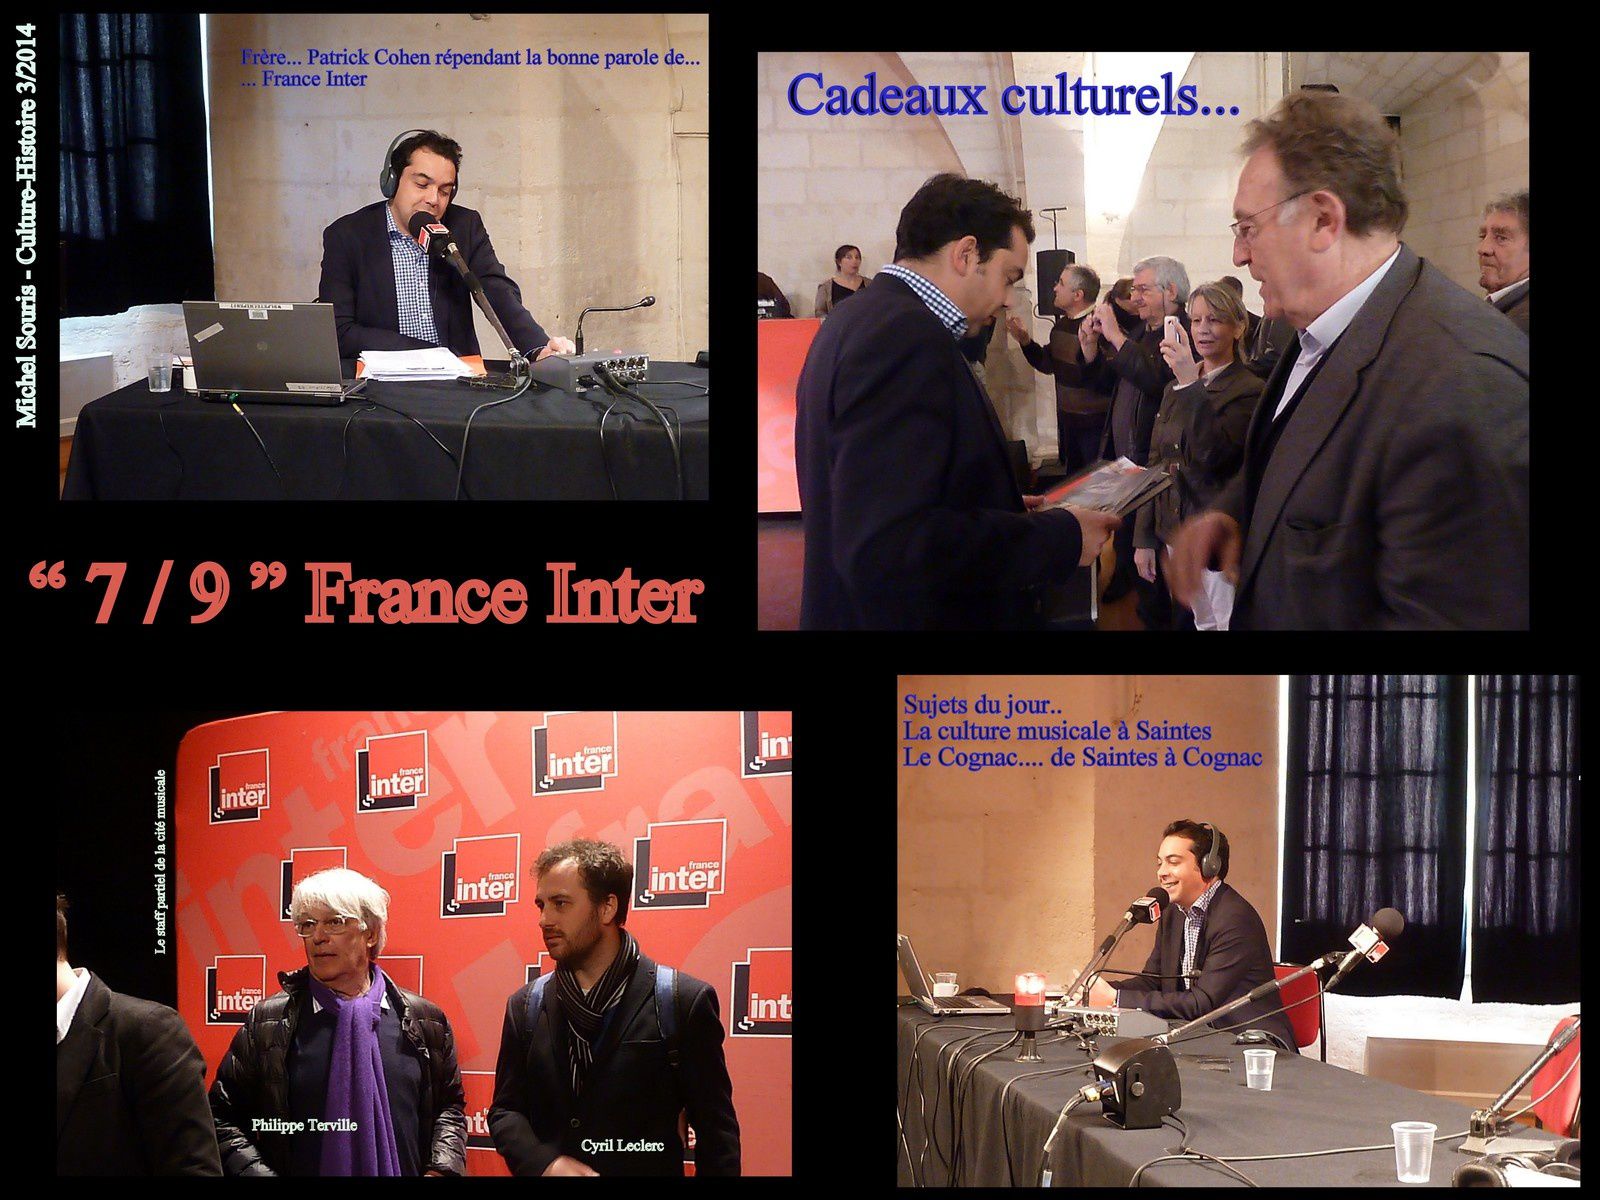 11 - Un nouveau Cap pour Saintes, avec Pierre Maudoux - Patrick Cohen de France Inter à Saintes - Raffarin, Machon, Bussereau.... Leurs grains de sel